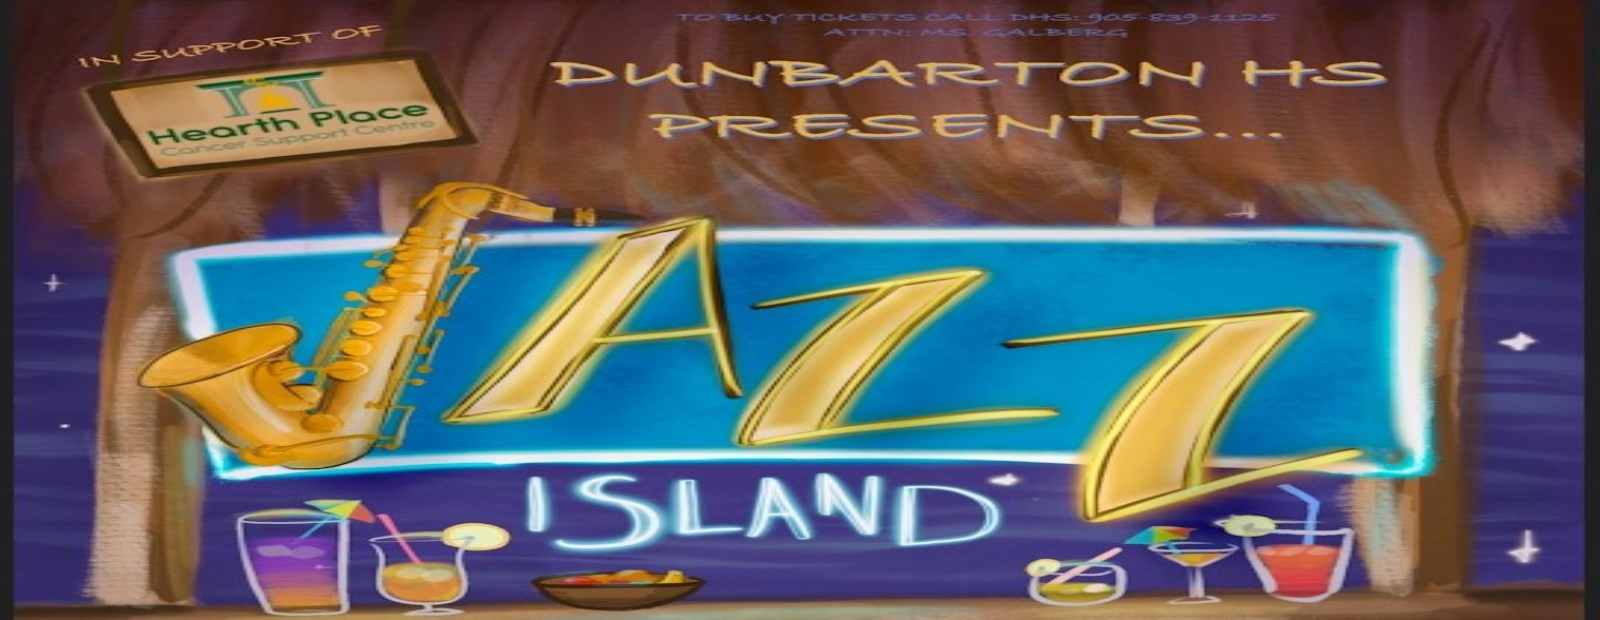 Jazz Island